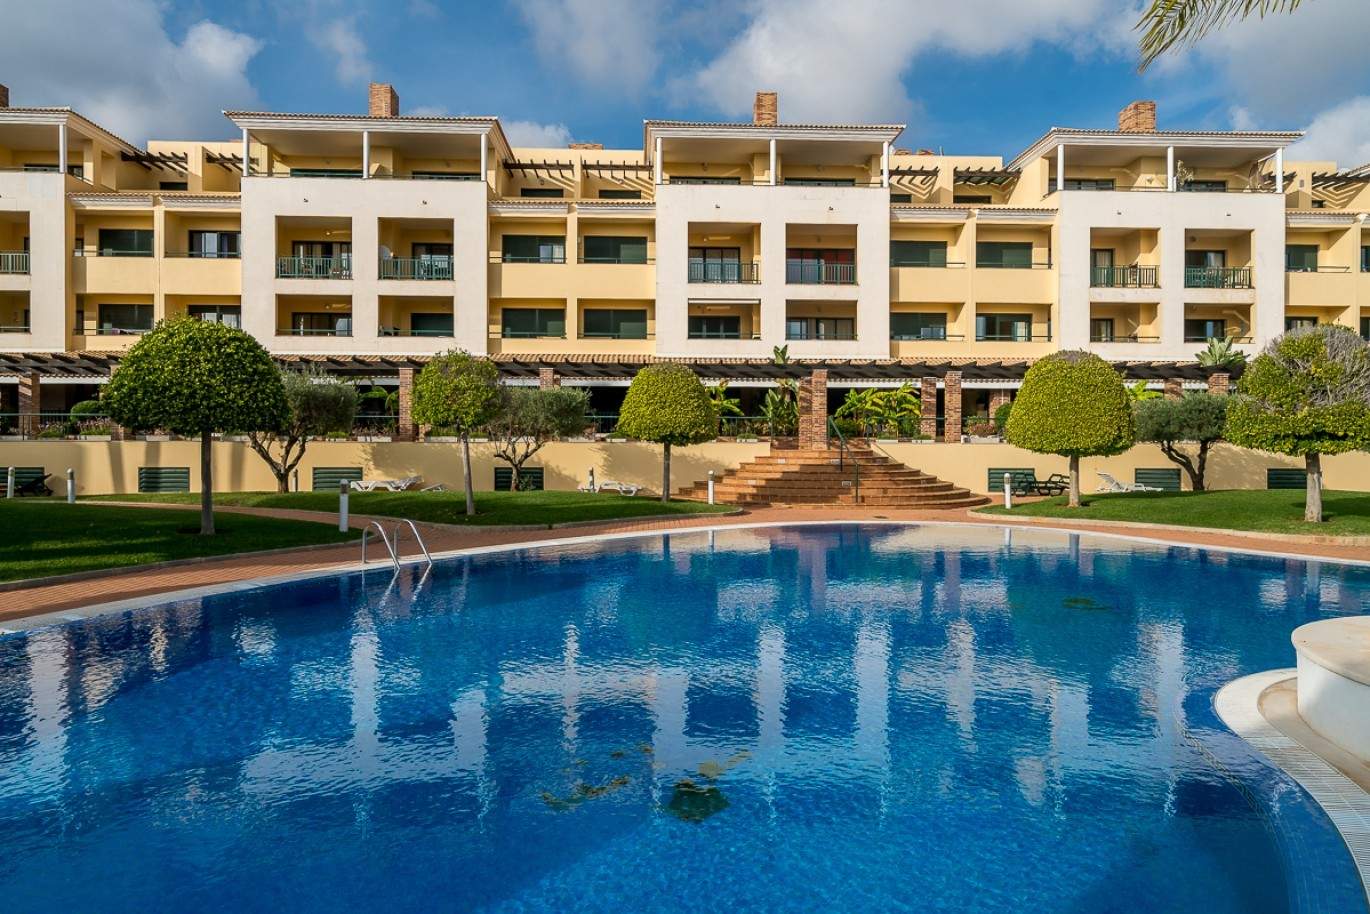 Venda de apartamento com piscina em Vilamoura, Algarve_87869